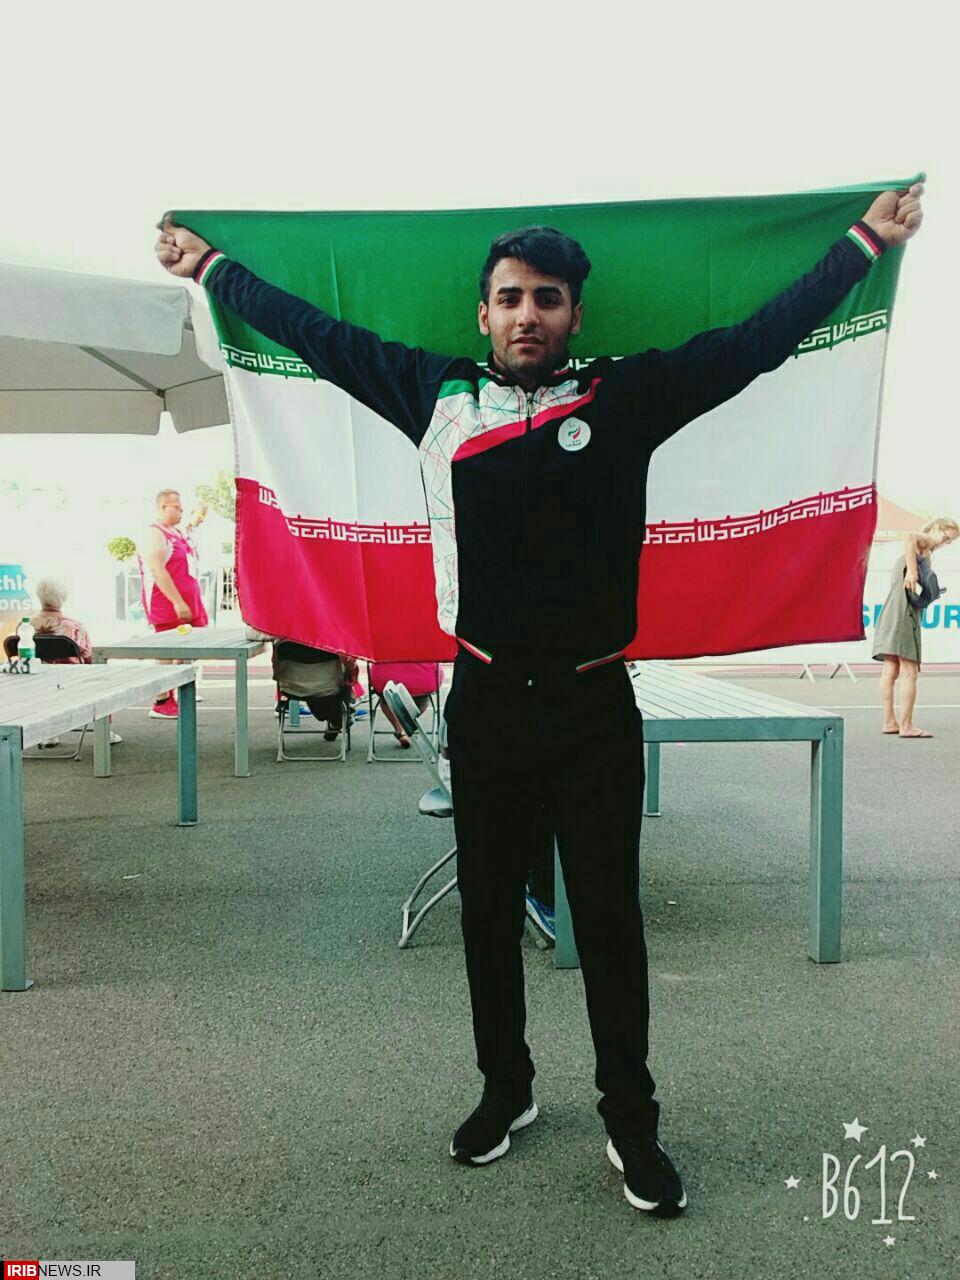 ورزشکار سنقری دو مدال رنگارنگ مسابقات جهانی دومیدانی را کسب کرد.